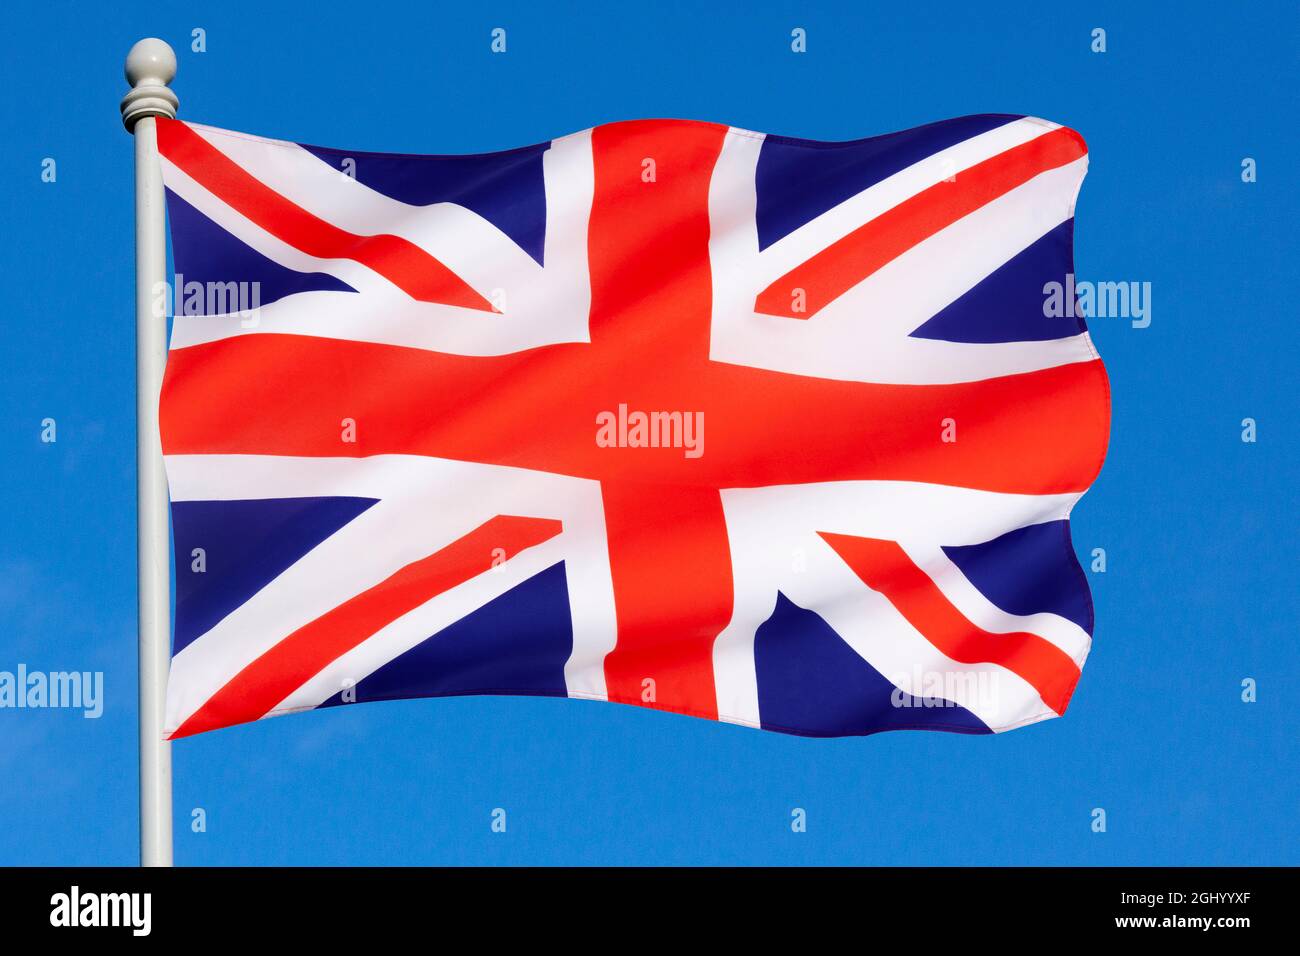 Le drapeau du Royaume-Uni de Grande-Bretagne et d'Irlande du Nord - l'Union Jack Banque D'Images